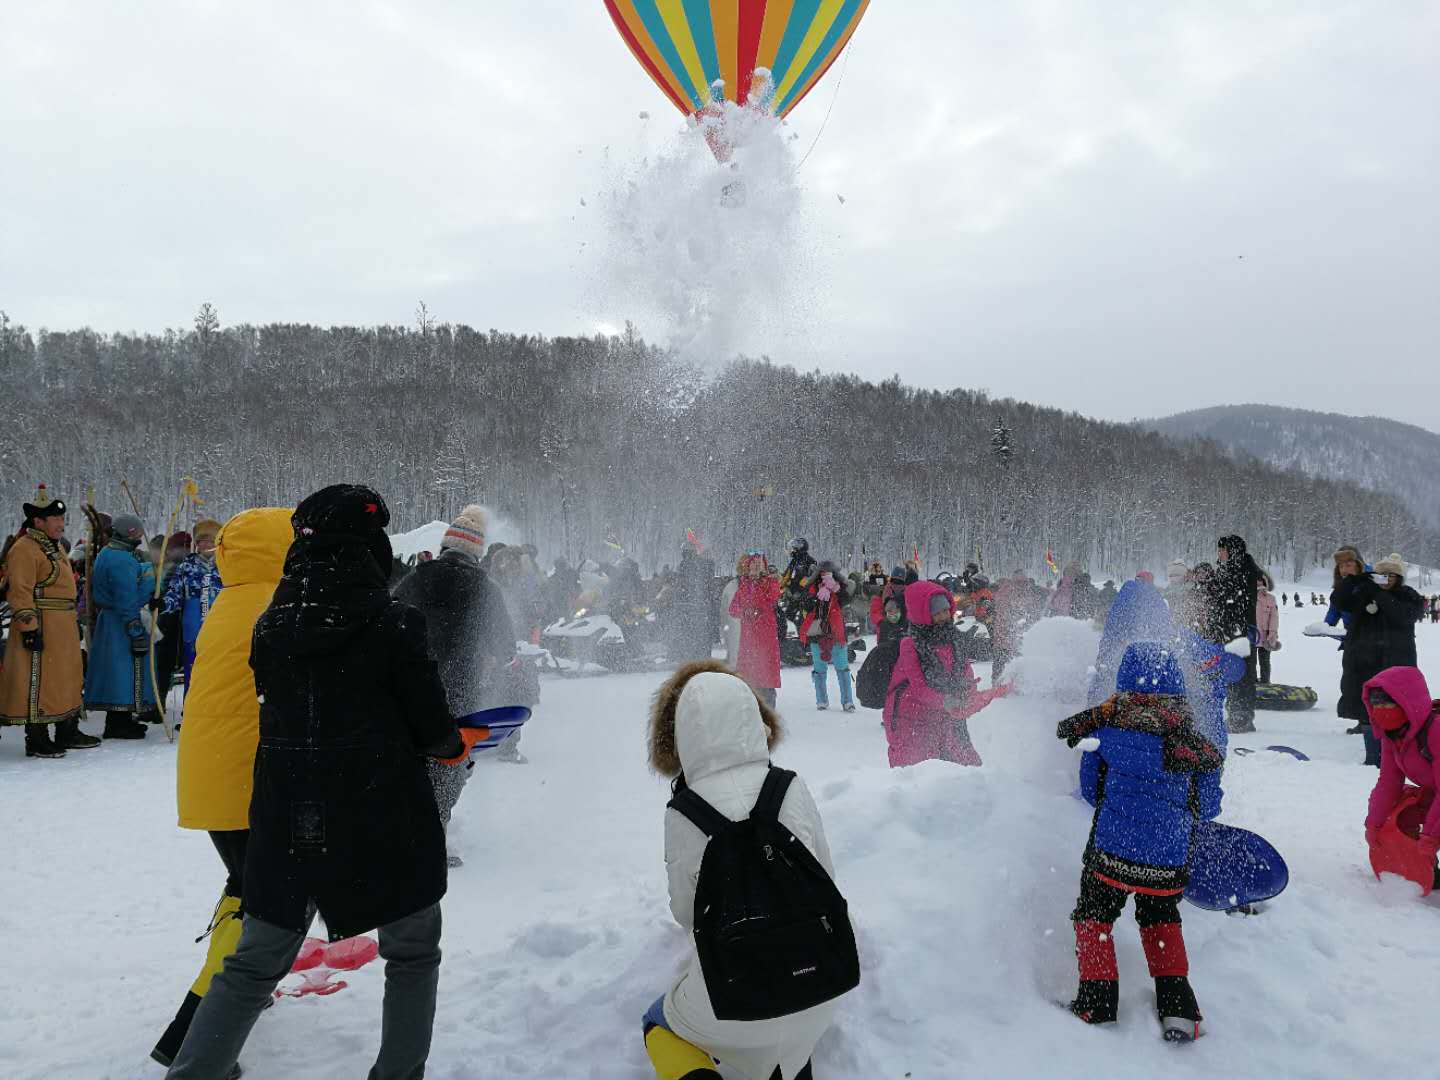 遊客在喀納斯冰雪風情旅遊節暨潑雪狂歡節現場互相潑雪祝福 應江洪 攝